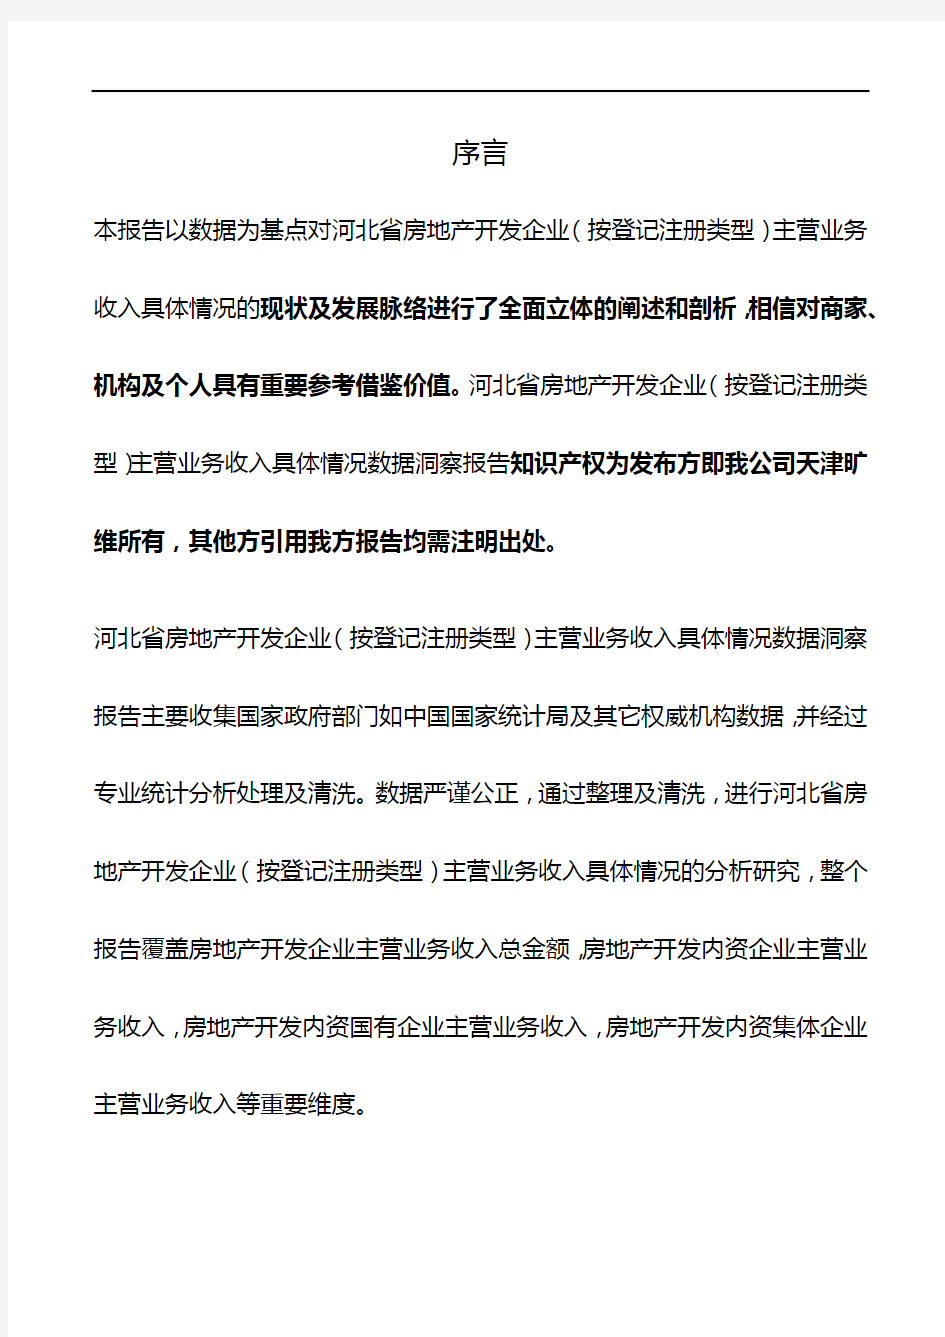 河北省房地产开发企业(按登记注册类型)主营业务收入具体情况3年数据洞察报告2019版